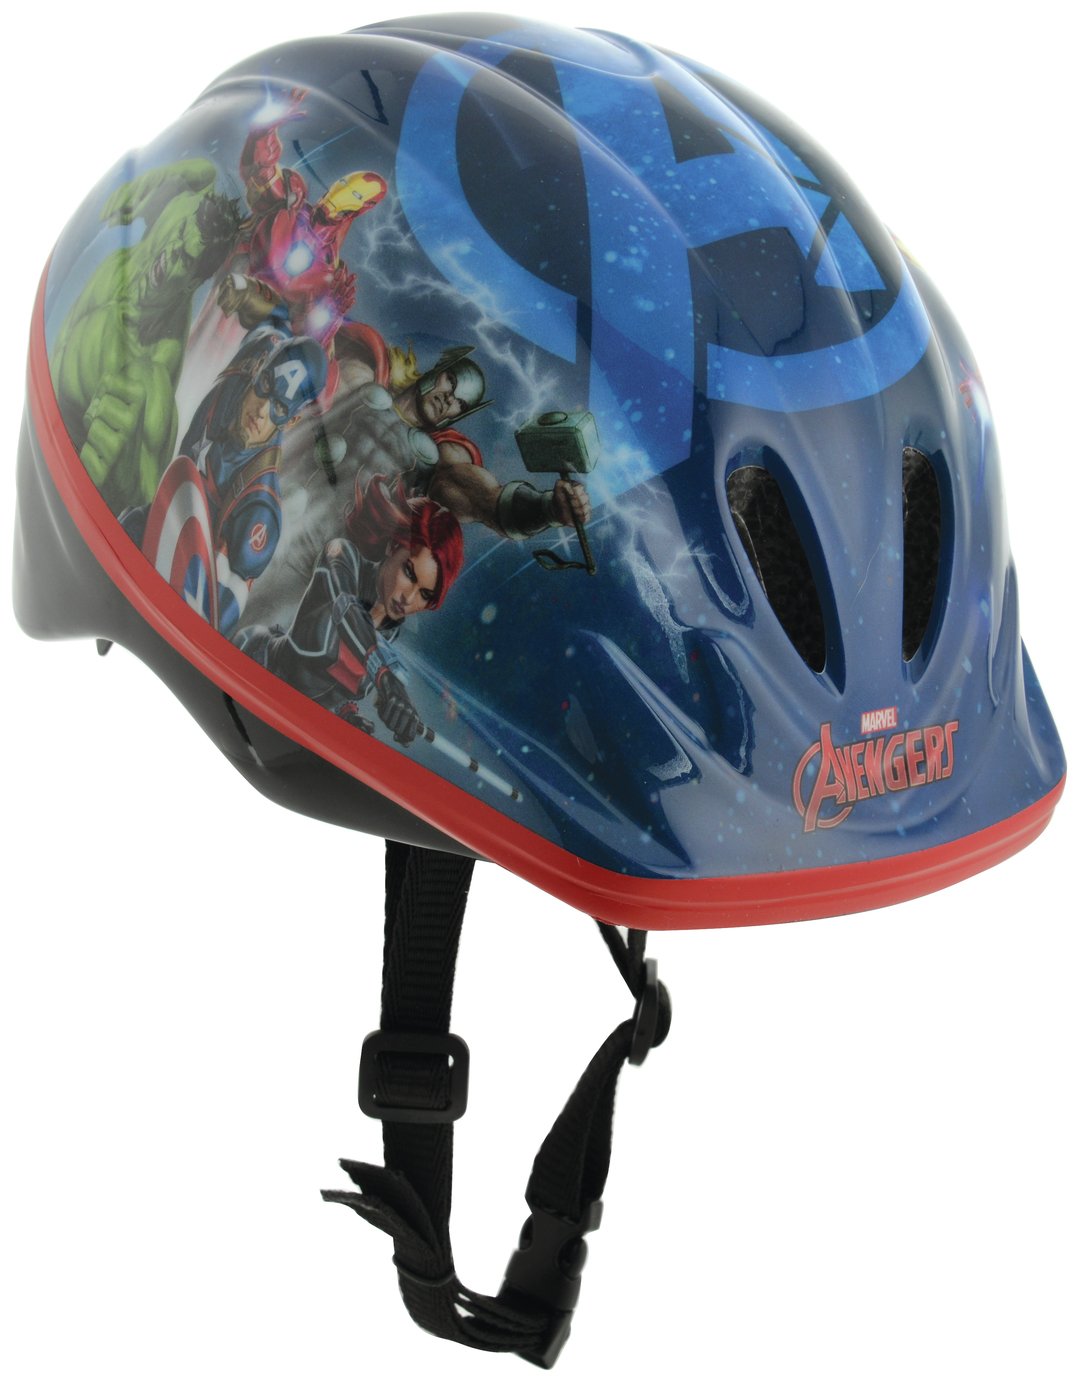 baby safety helmet argos